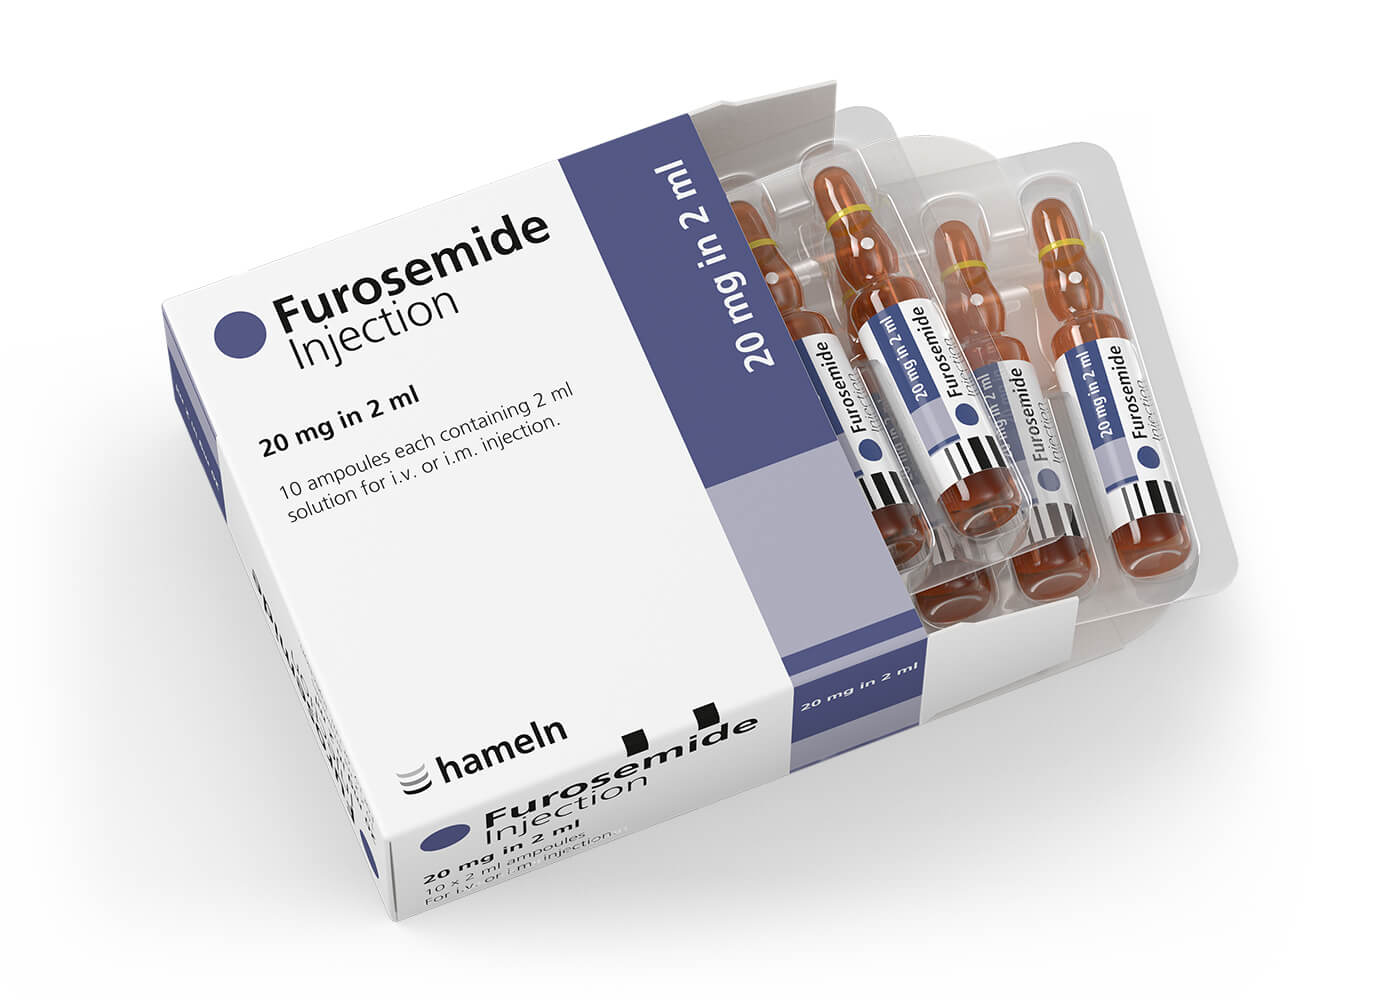 Furosemide_UK_20_mg-ml_in_2_ml_Pack-Amp_10St_2020-20